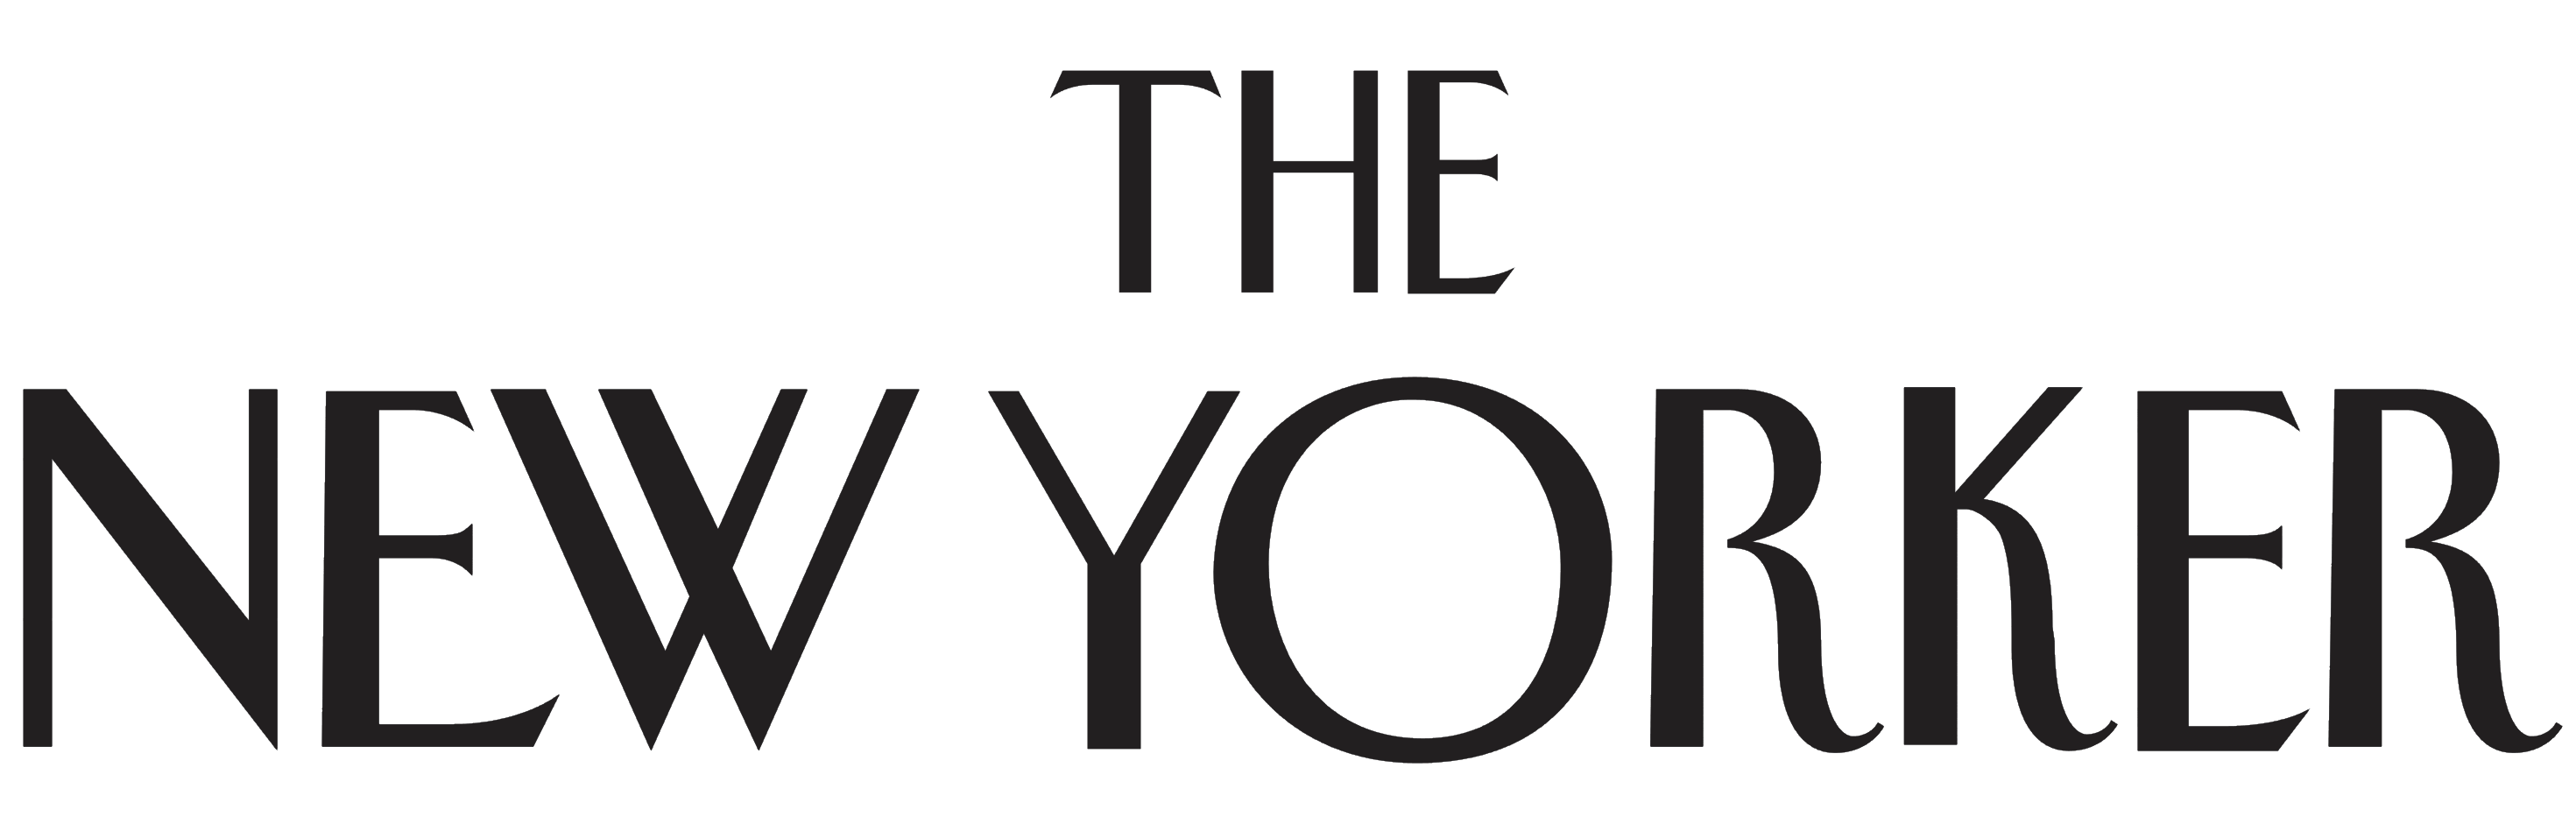 The-new-yorker-logo.jpg